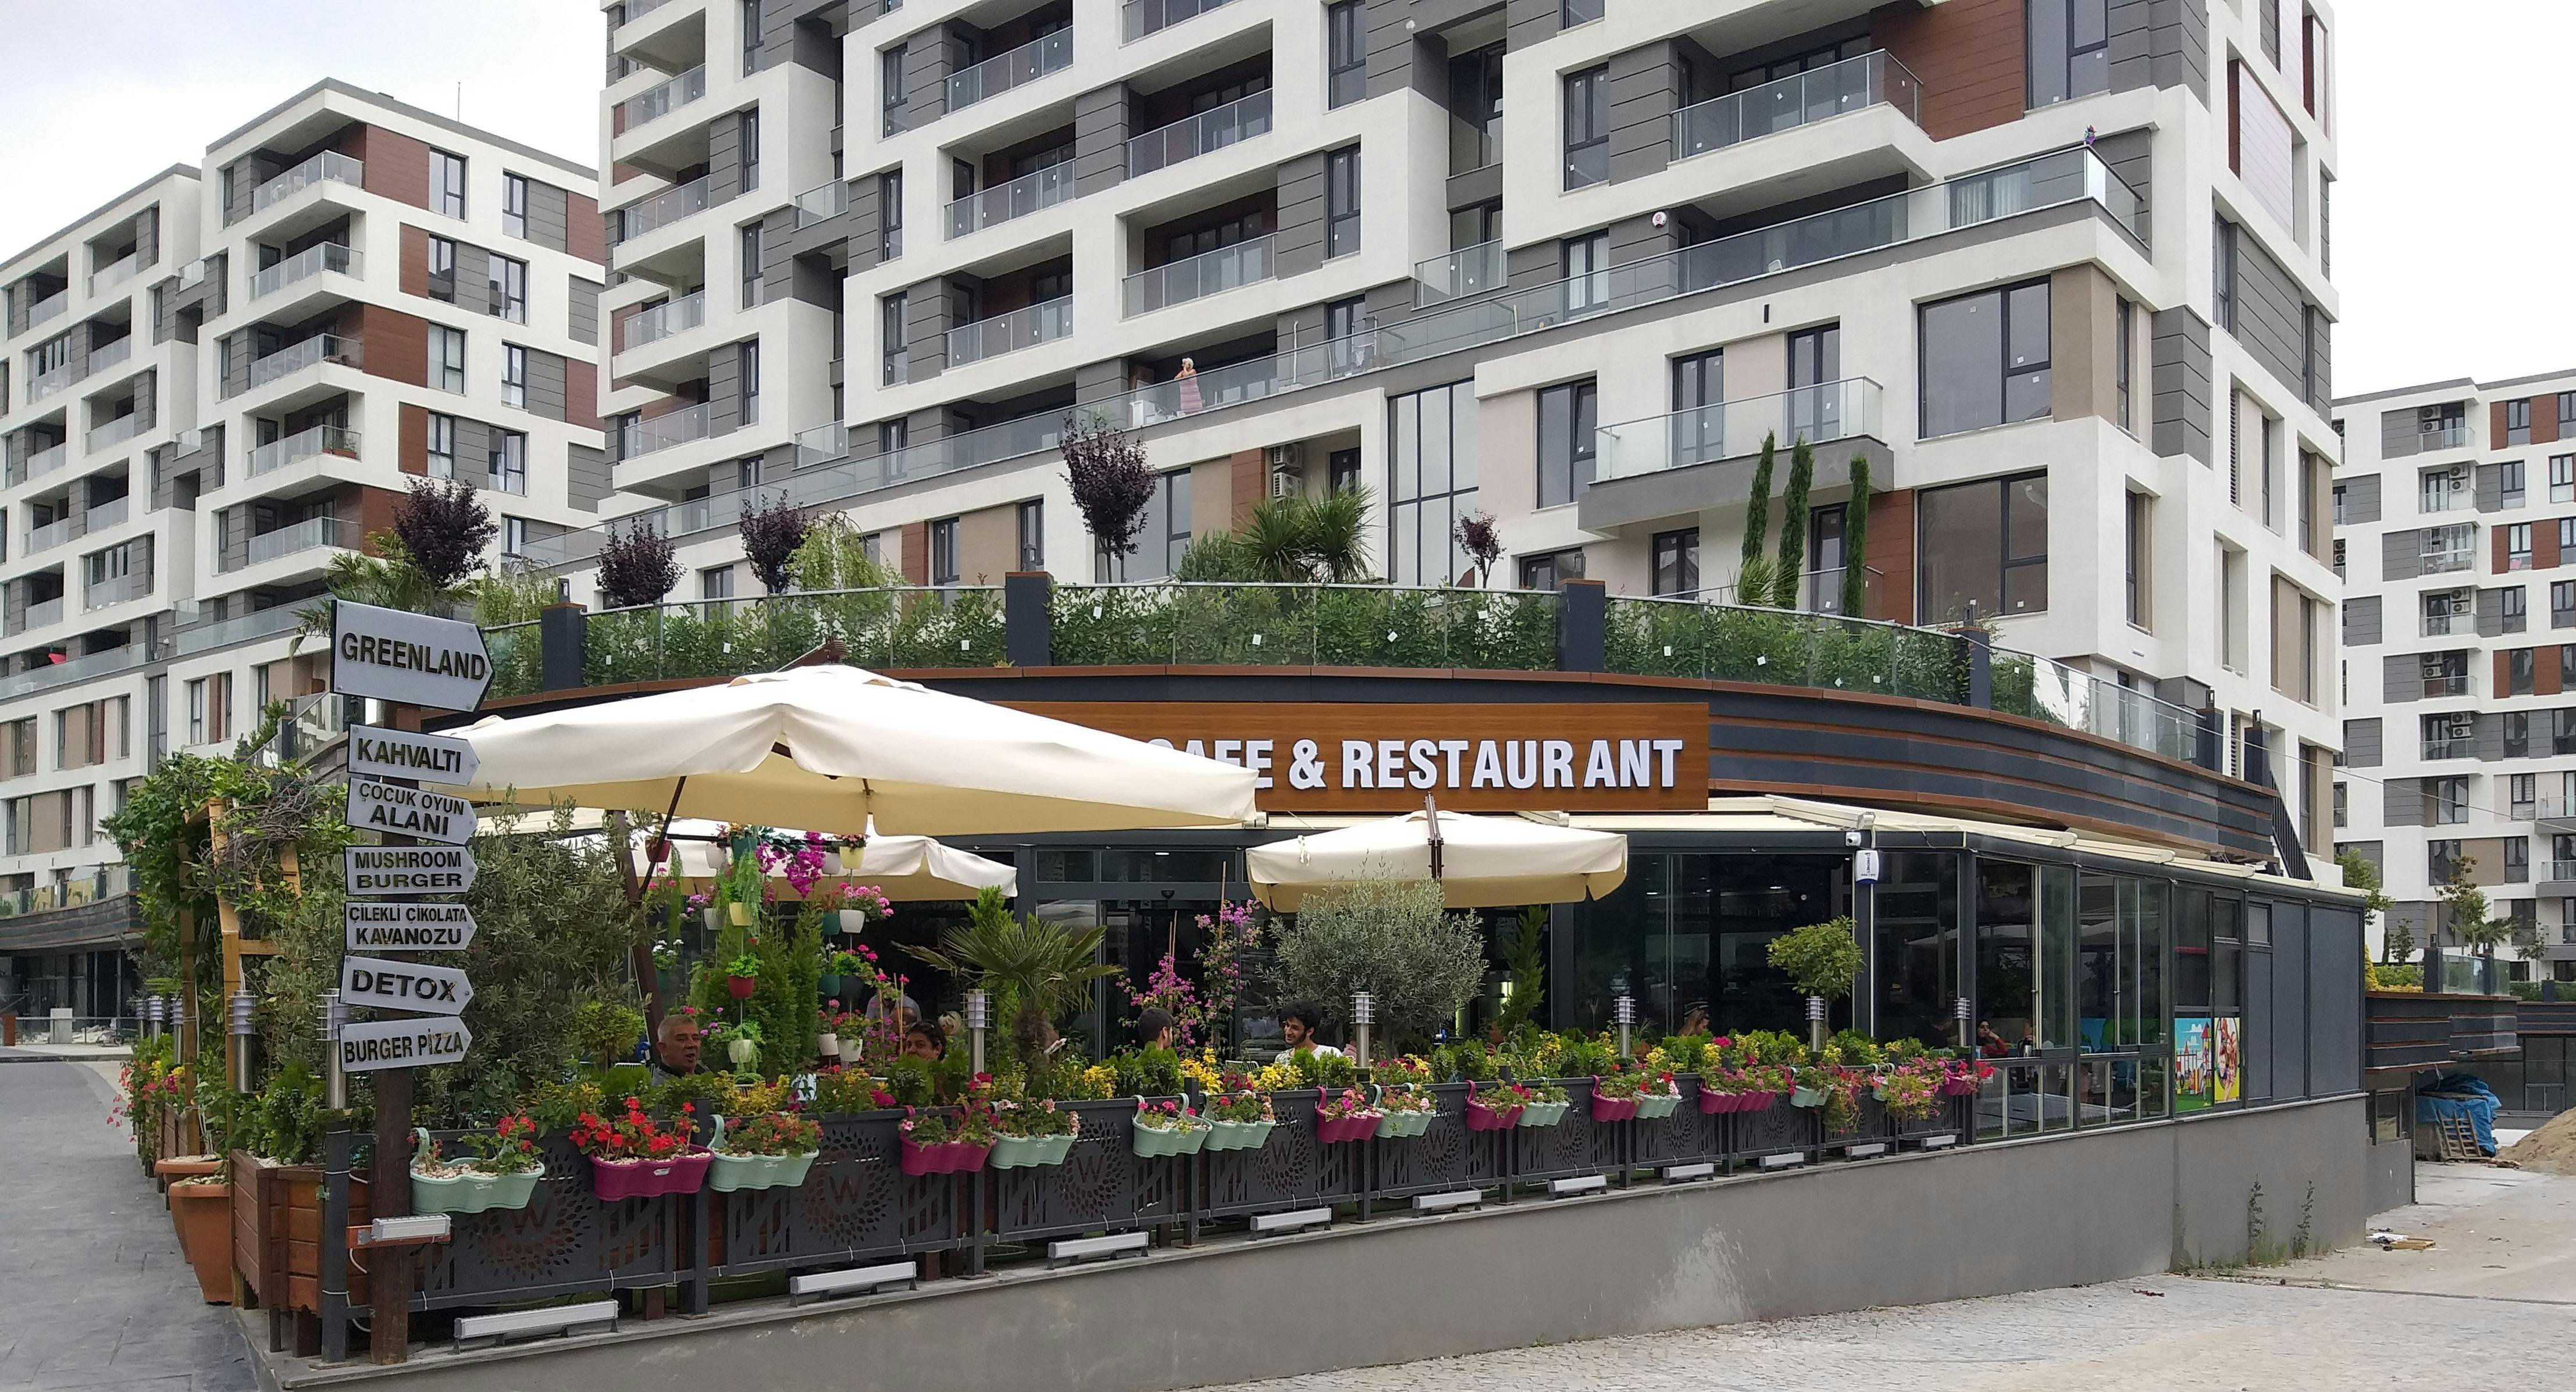 Beylikdüzü, Istanbul şehrindeki Green Land Cafe & Restaurant restoranının fotoğrafı